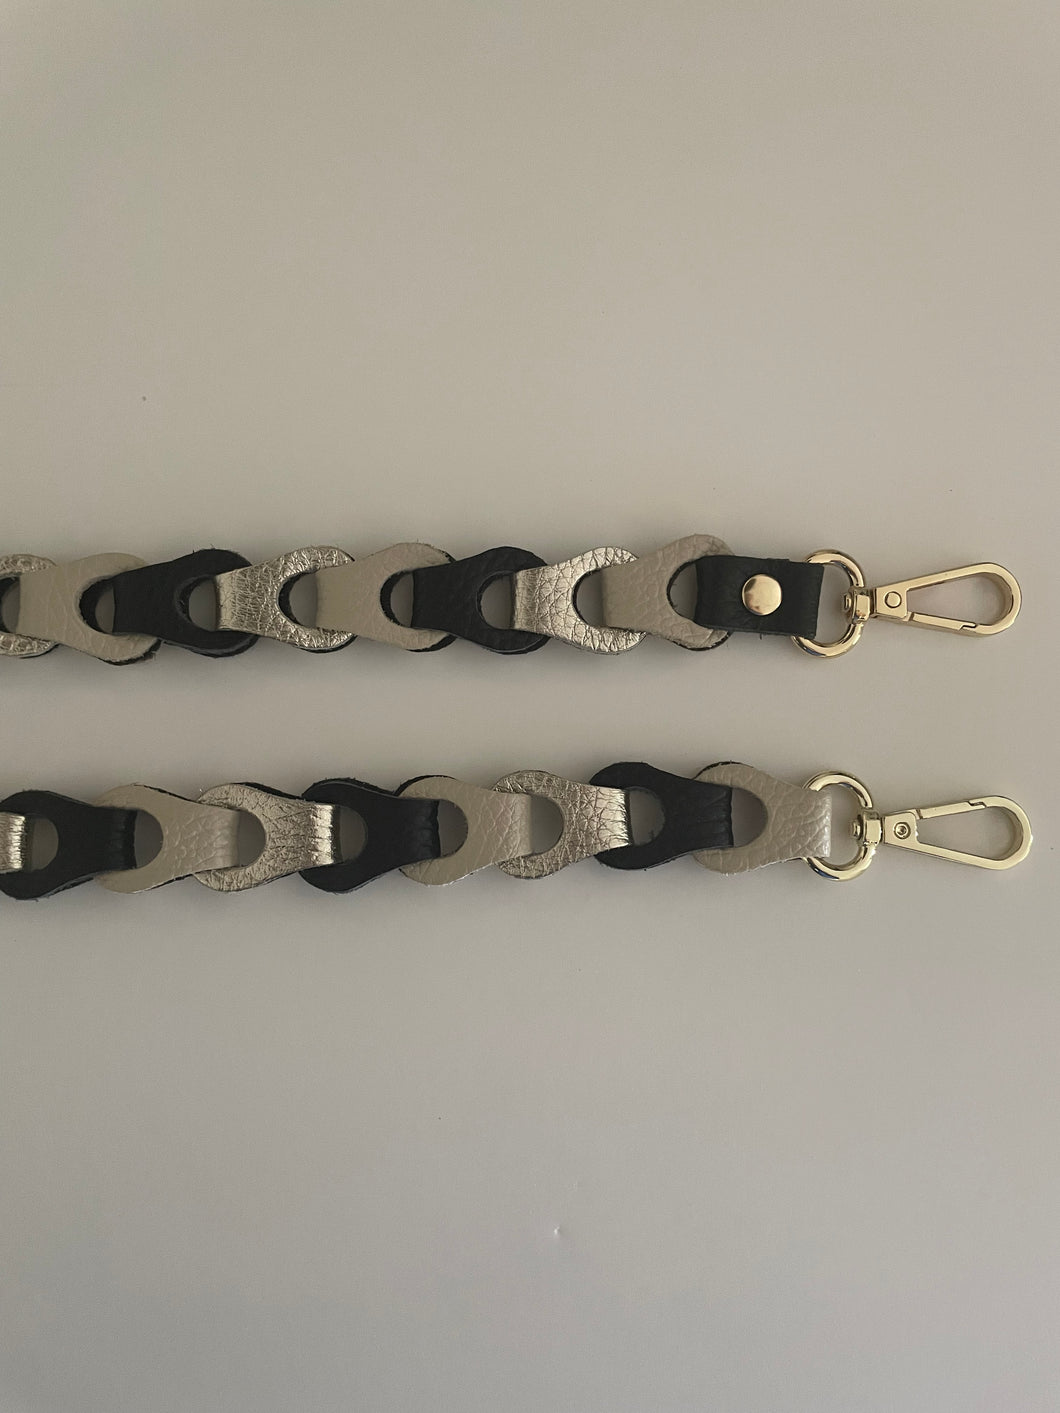 Lederen Bagstrap Small, schouderband voor aan een tas, ook als telefoonkoord te dragen. De band is ca. 2,5cm breed en is niet verstelbaar. De schouderband is in verschillende kleuren verkrijgbaar: Beige-Zwart-Zilvermetallic, Beige-Groen-Zilvermetallic, Beige-Rozemetallic-Bronsmetallic-Zilvermetallic.